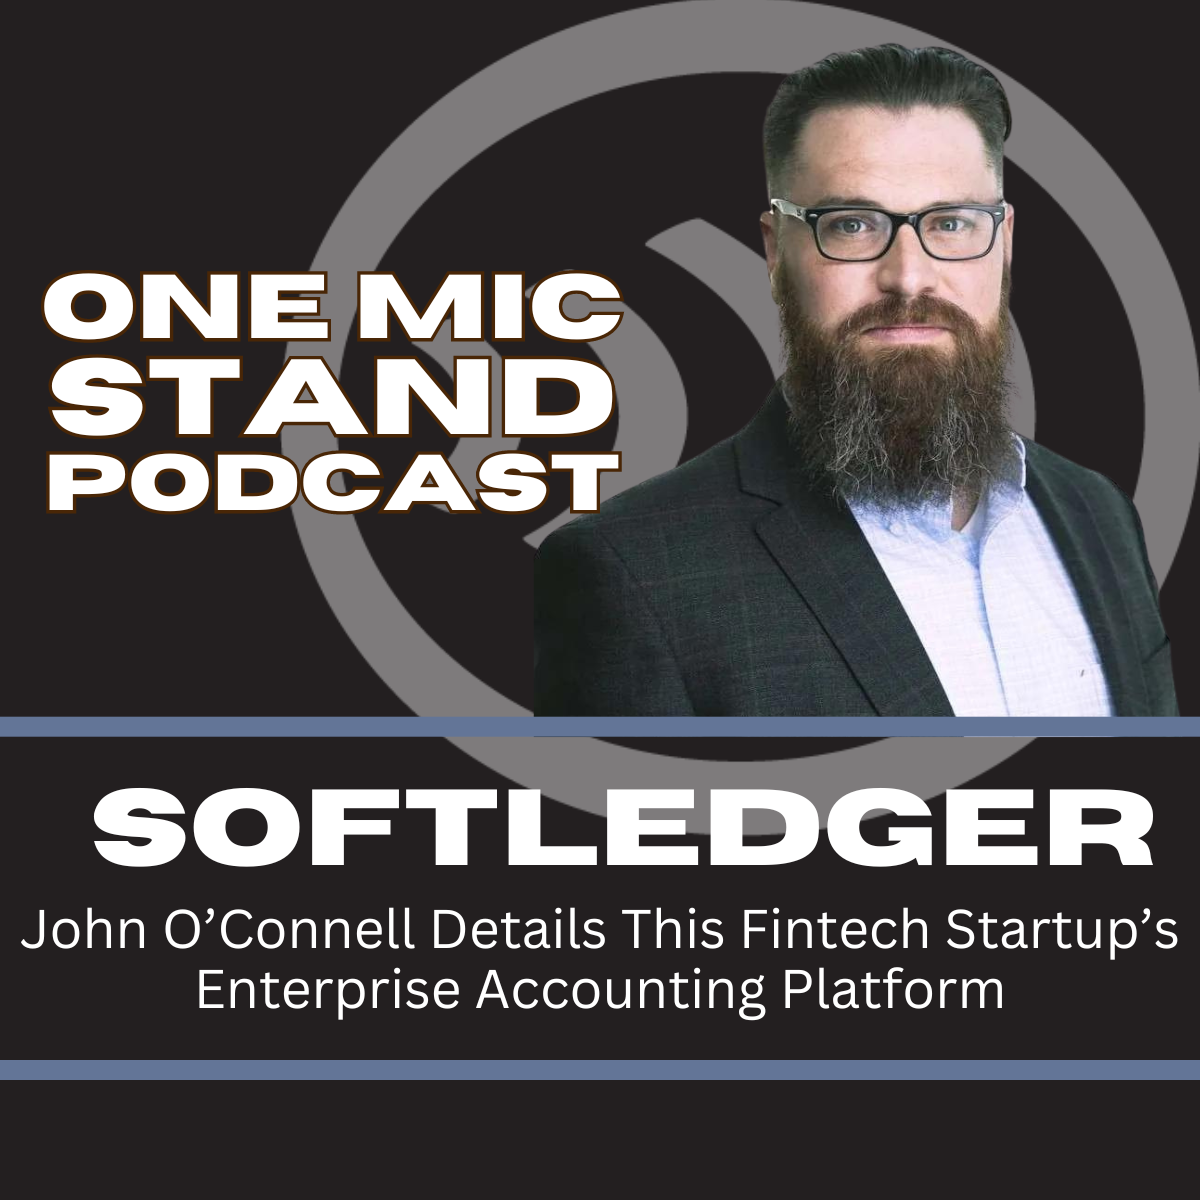 John O'Connell of SoftLedger